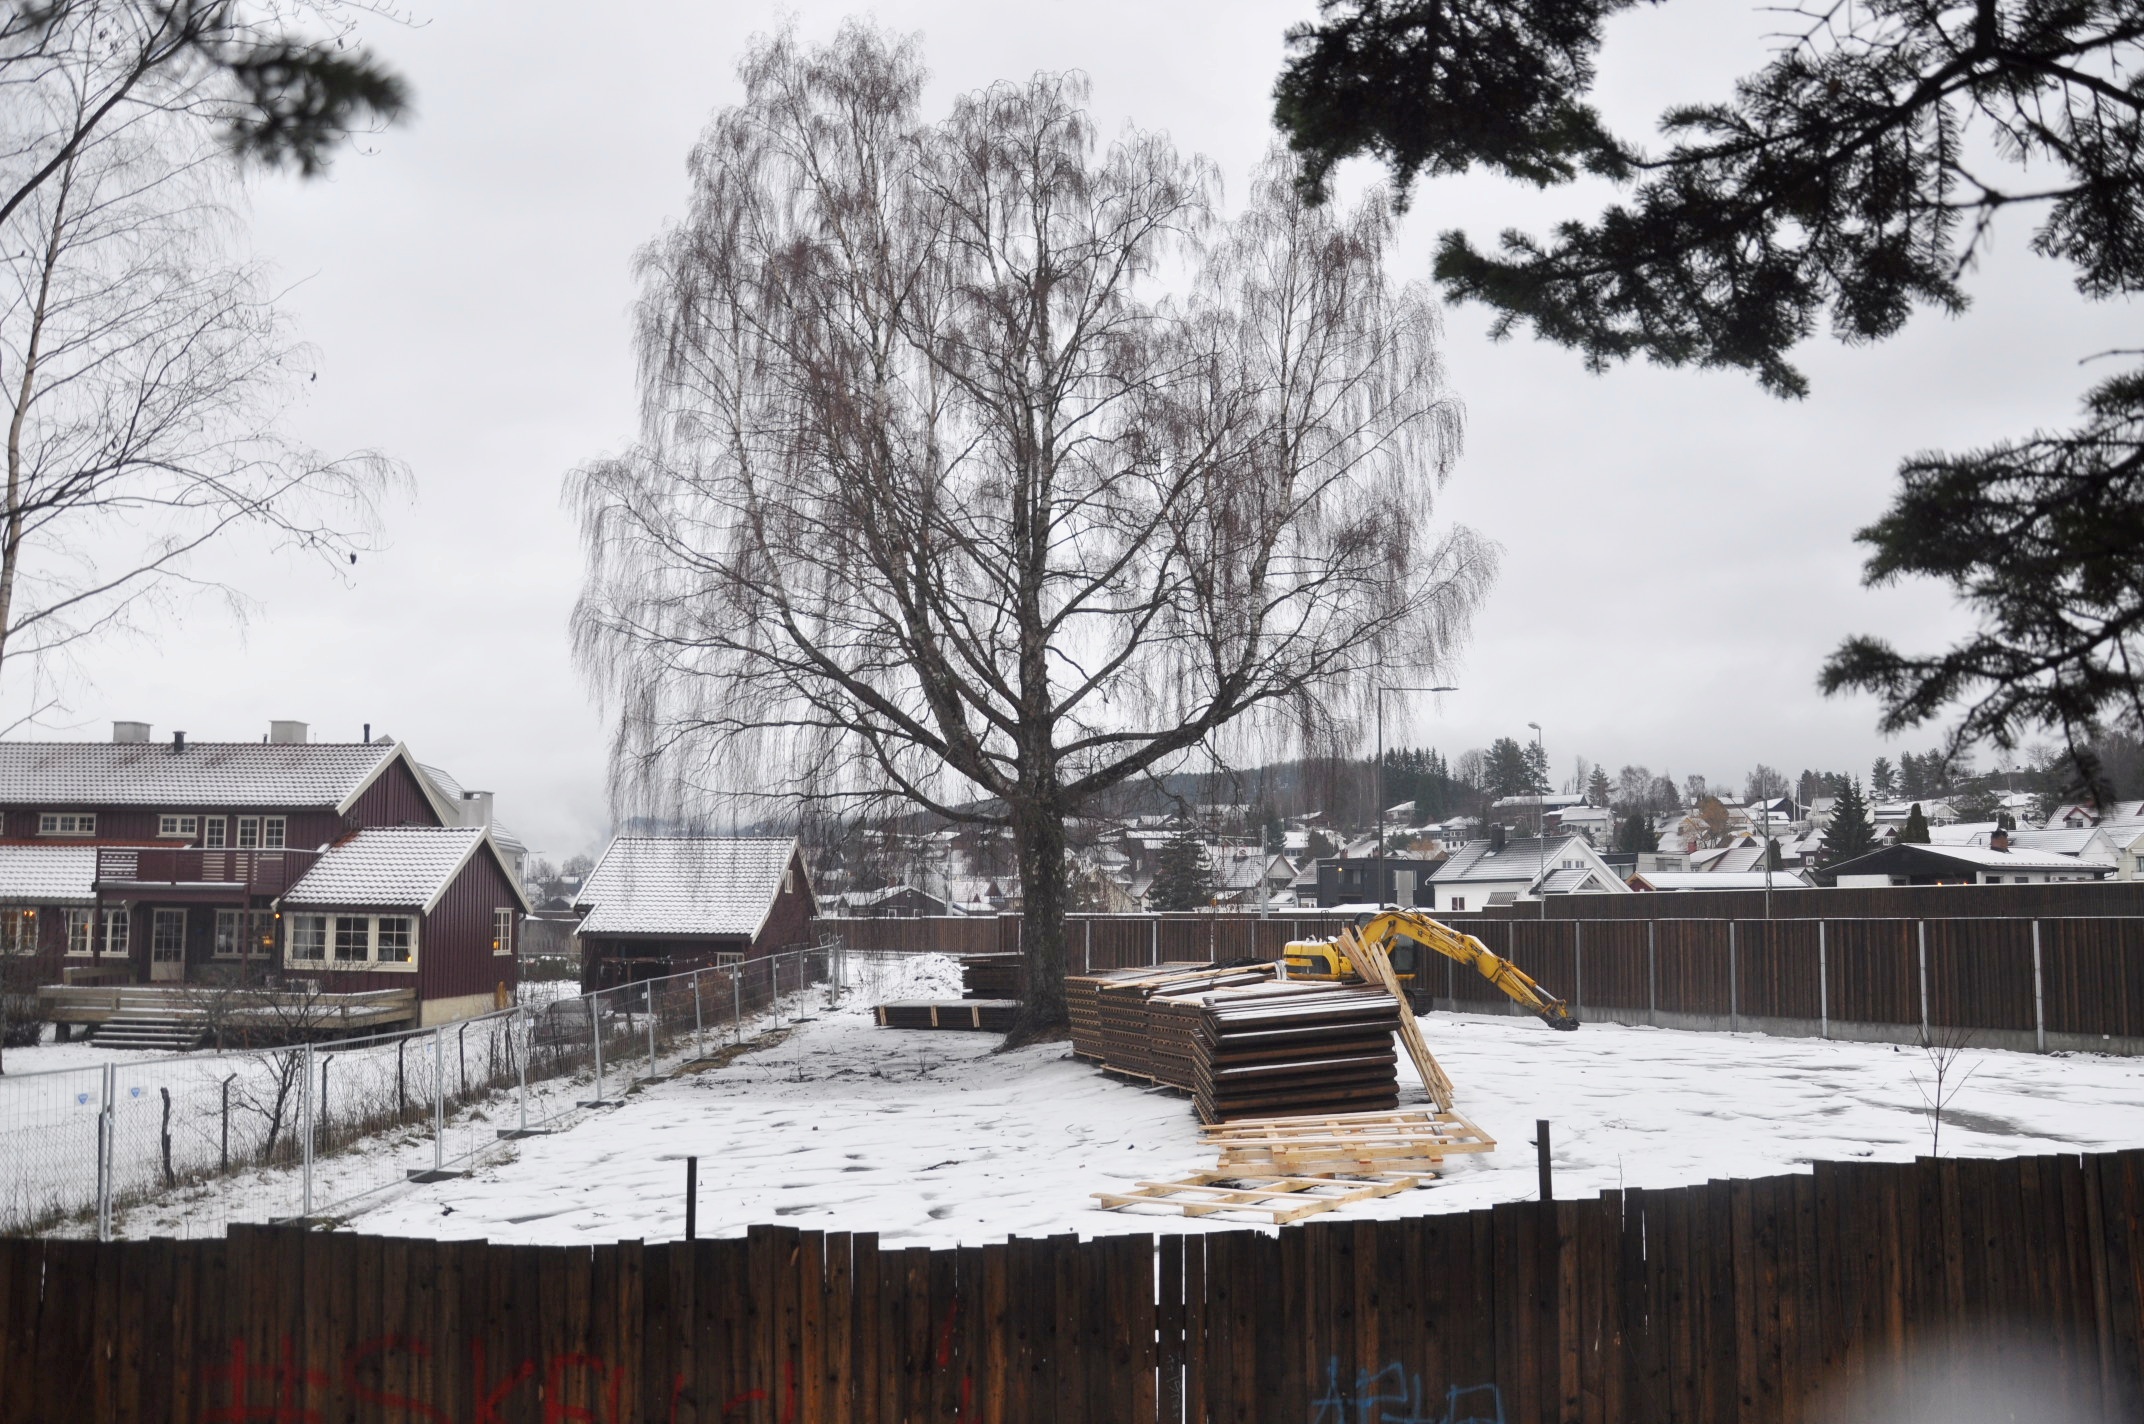 Hus og frukttrær måtte vike, men bjørka fikk stå for ny veg. (Foto: Kjell Wold)